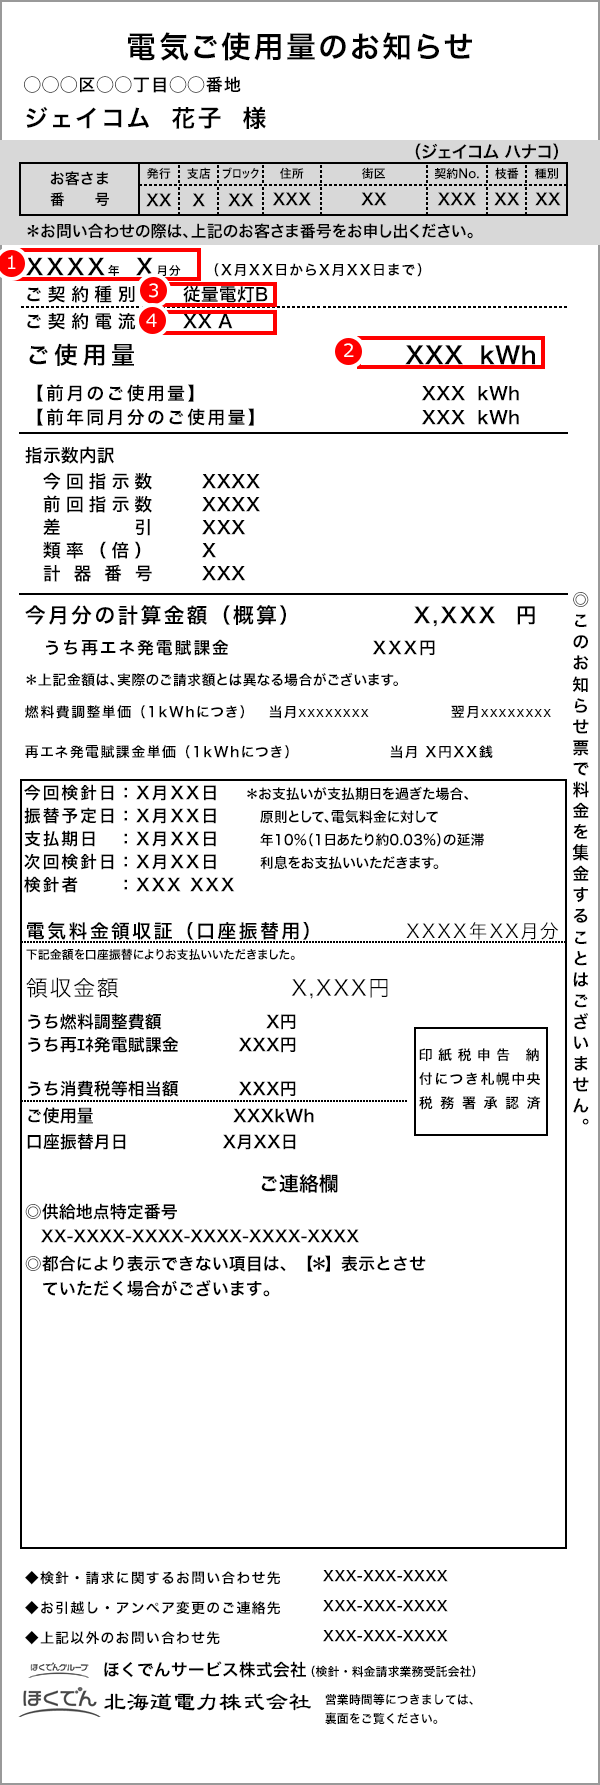 北海道電力検針票